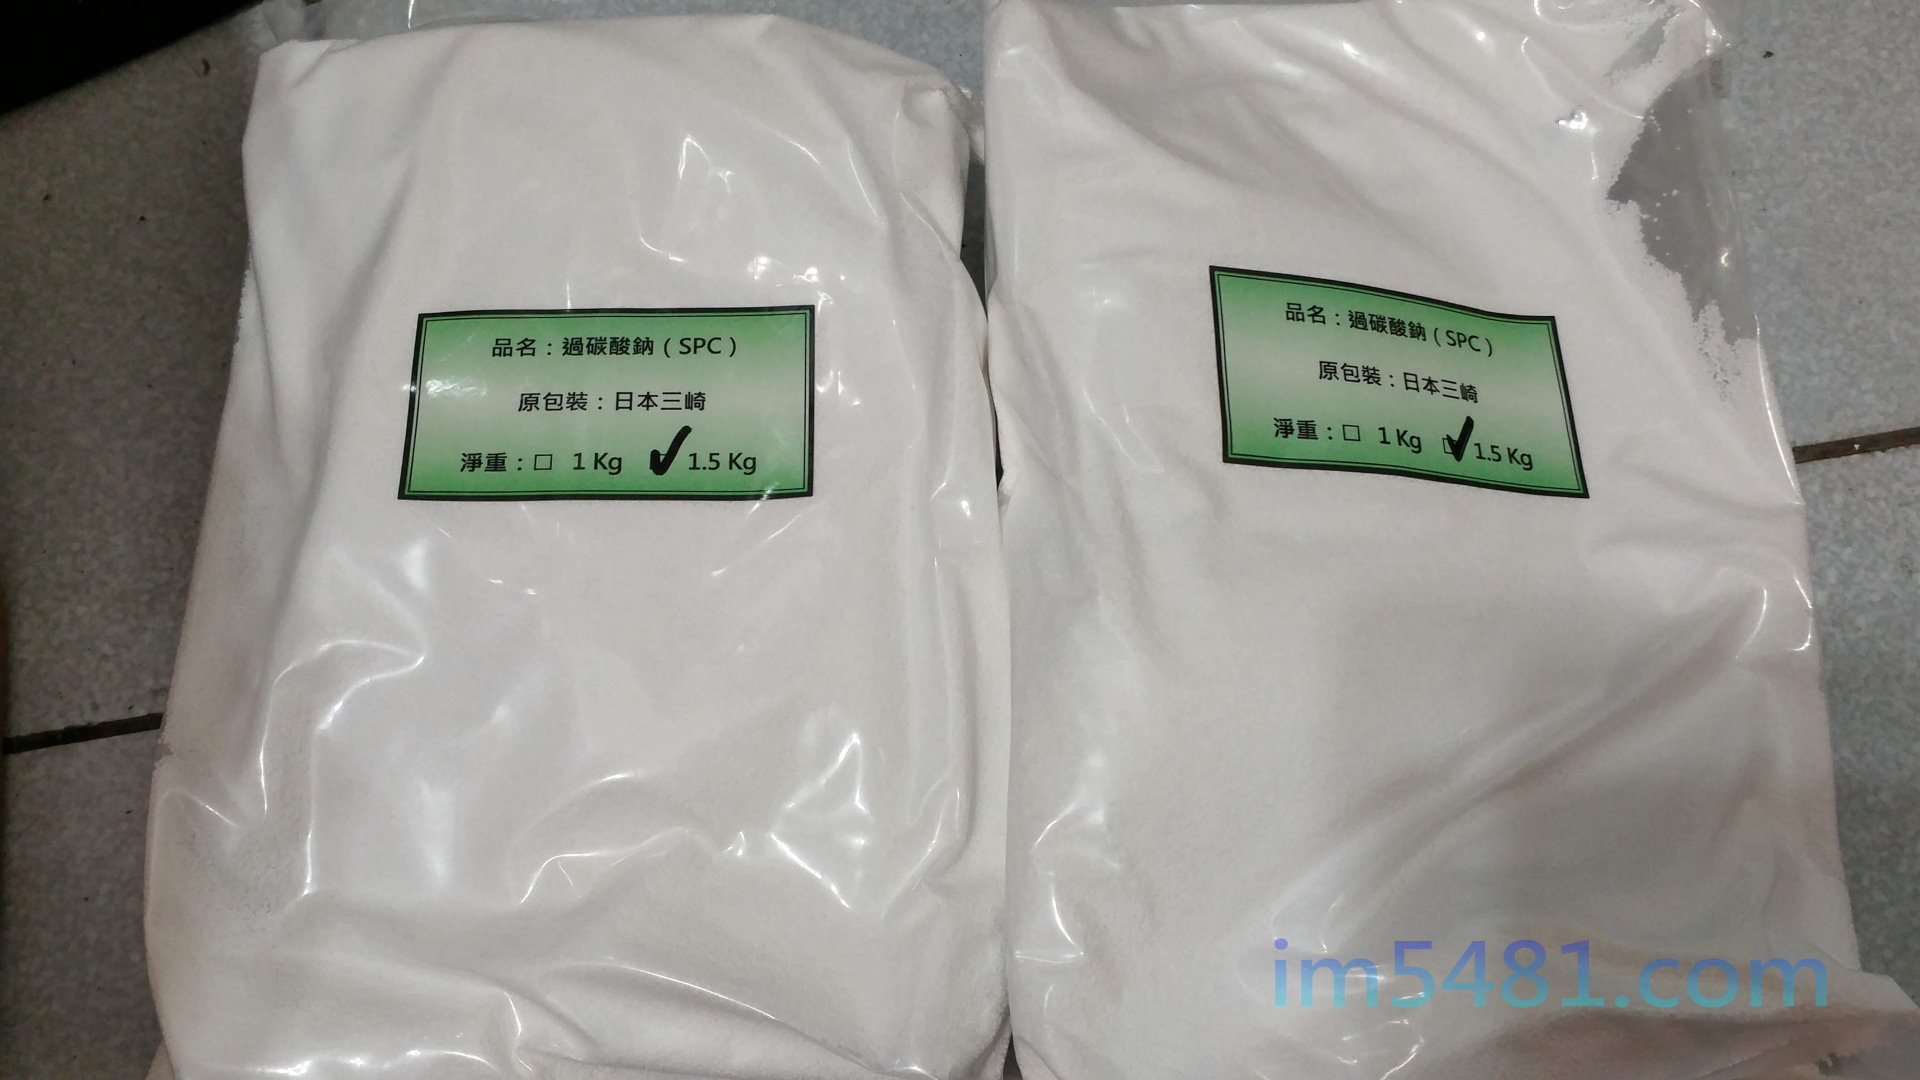 過碳酸鈉 1.5kg 包裝，然而1Kg跟1.5Kg過碳酸鈉用塑膠袋包裝，為最常見的散裝包裝